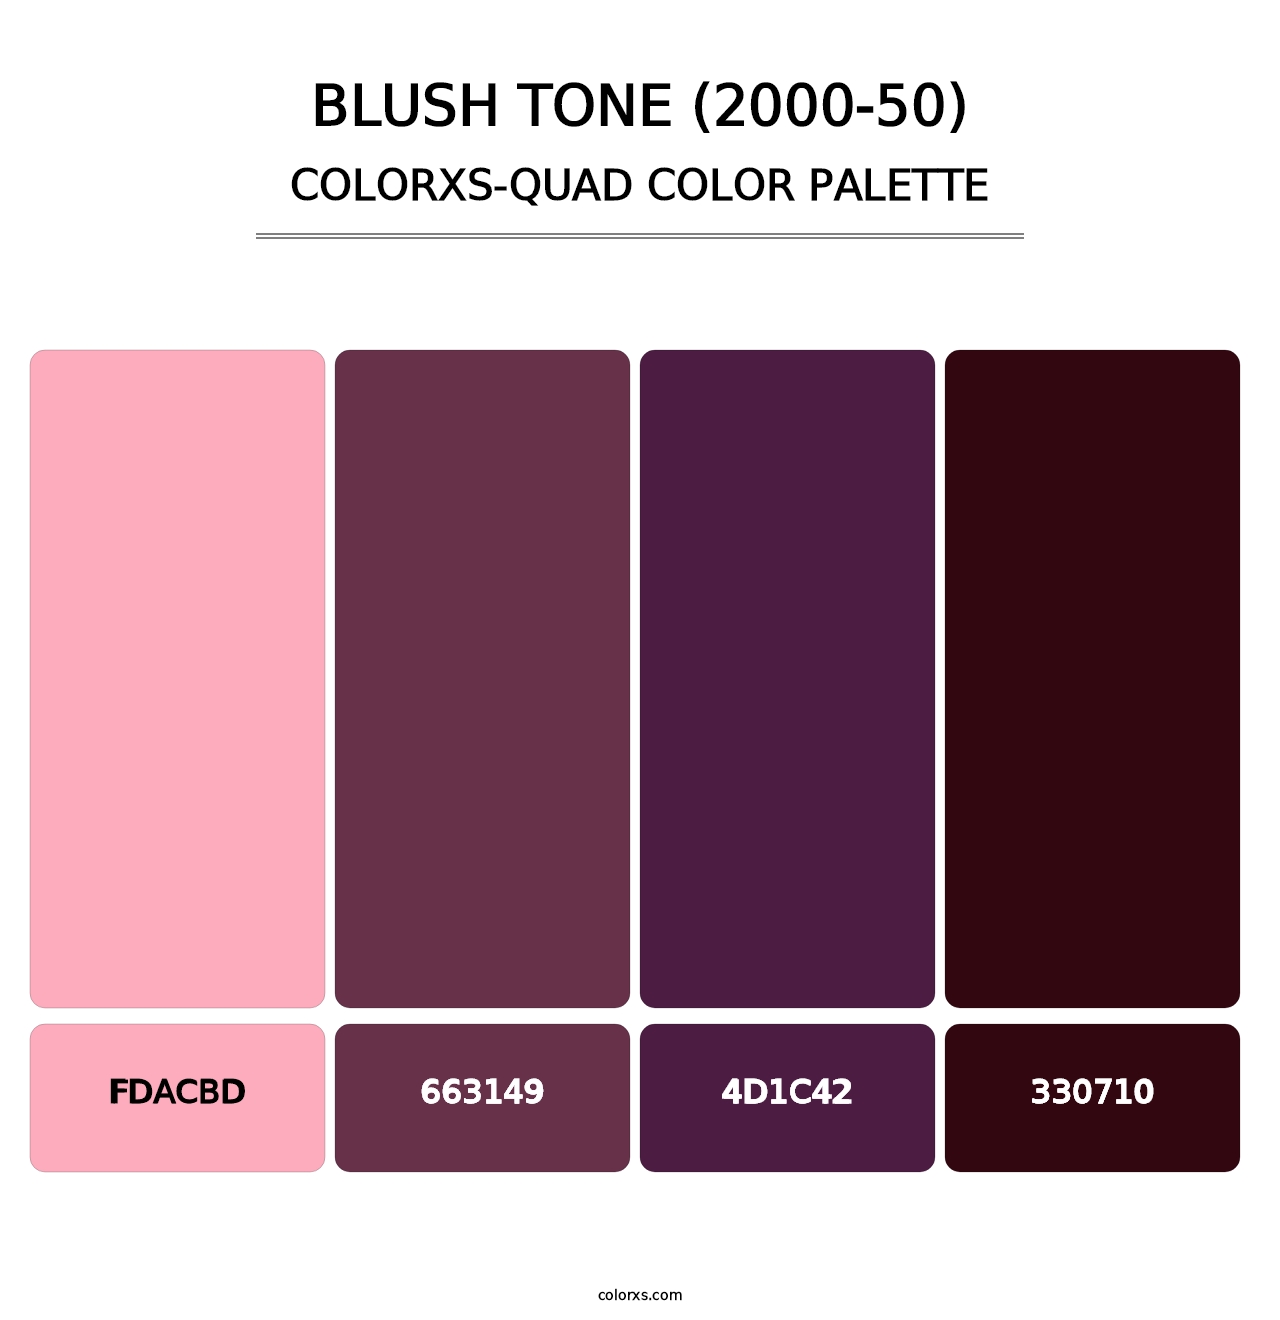 Blush Tone (2000-50) - Colorxs Quad Palette